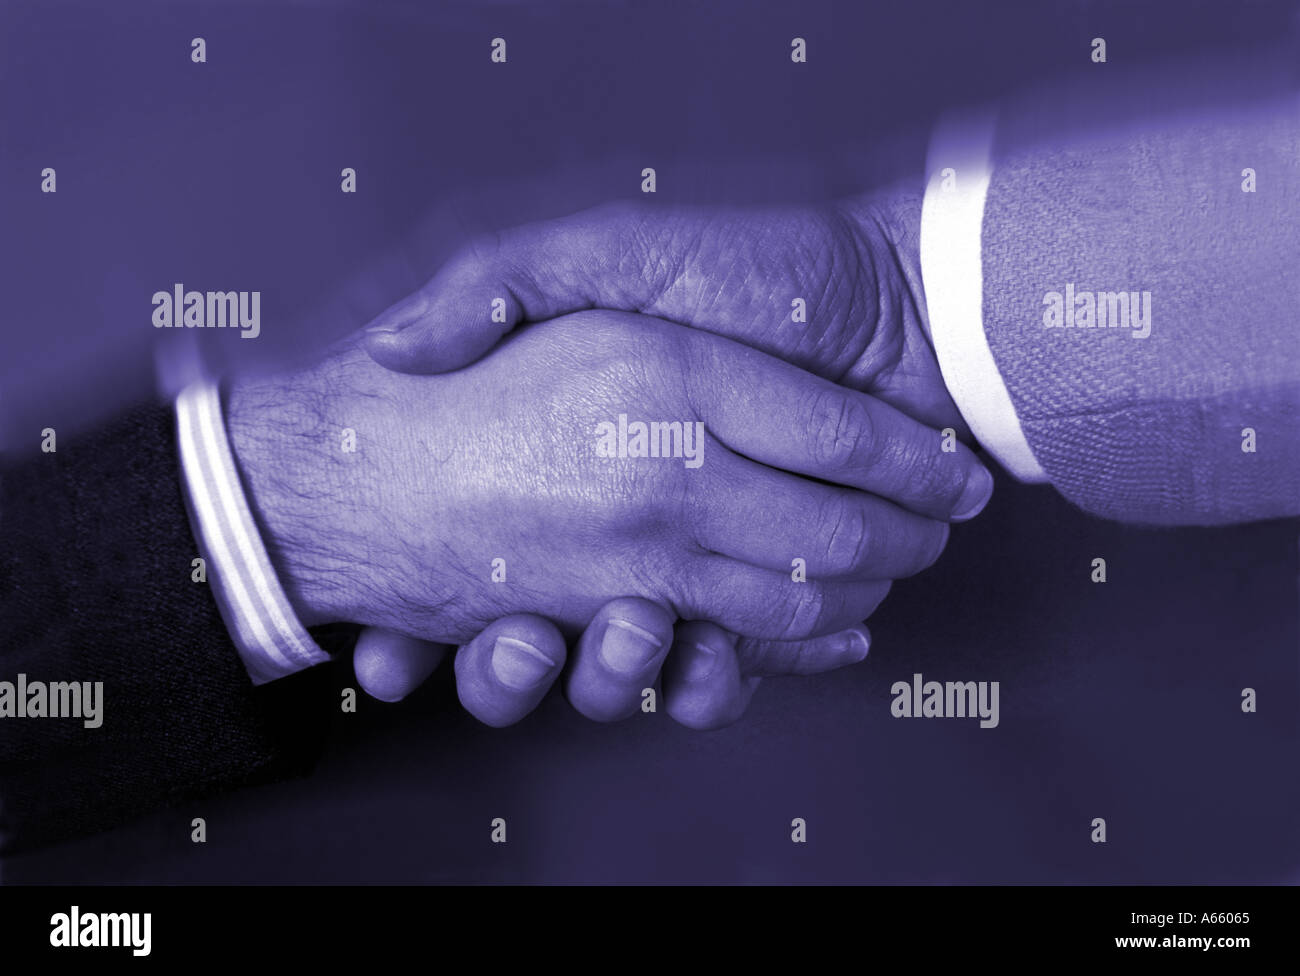 handshake between two businessmen Stock Photo